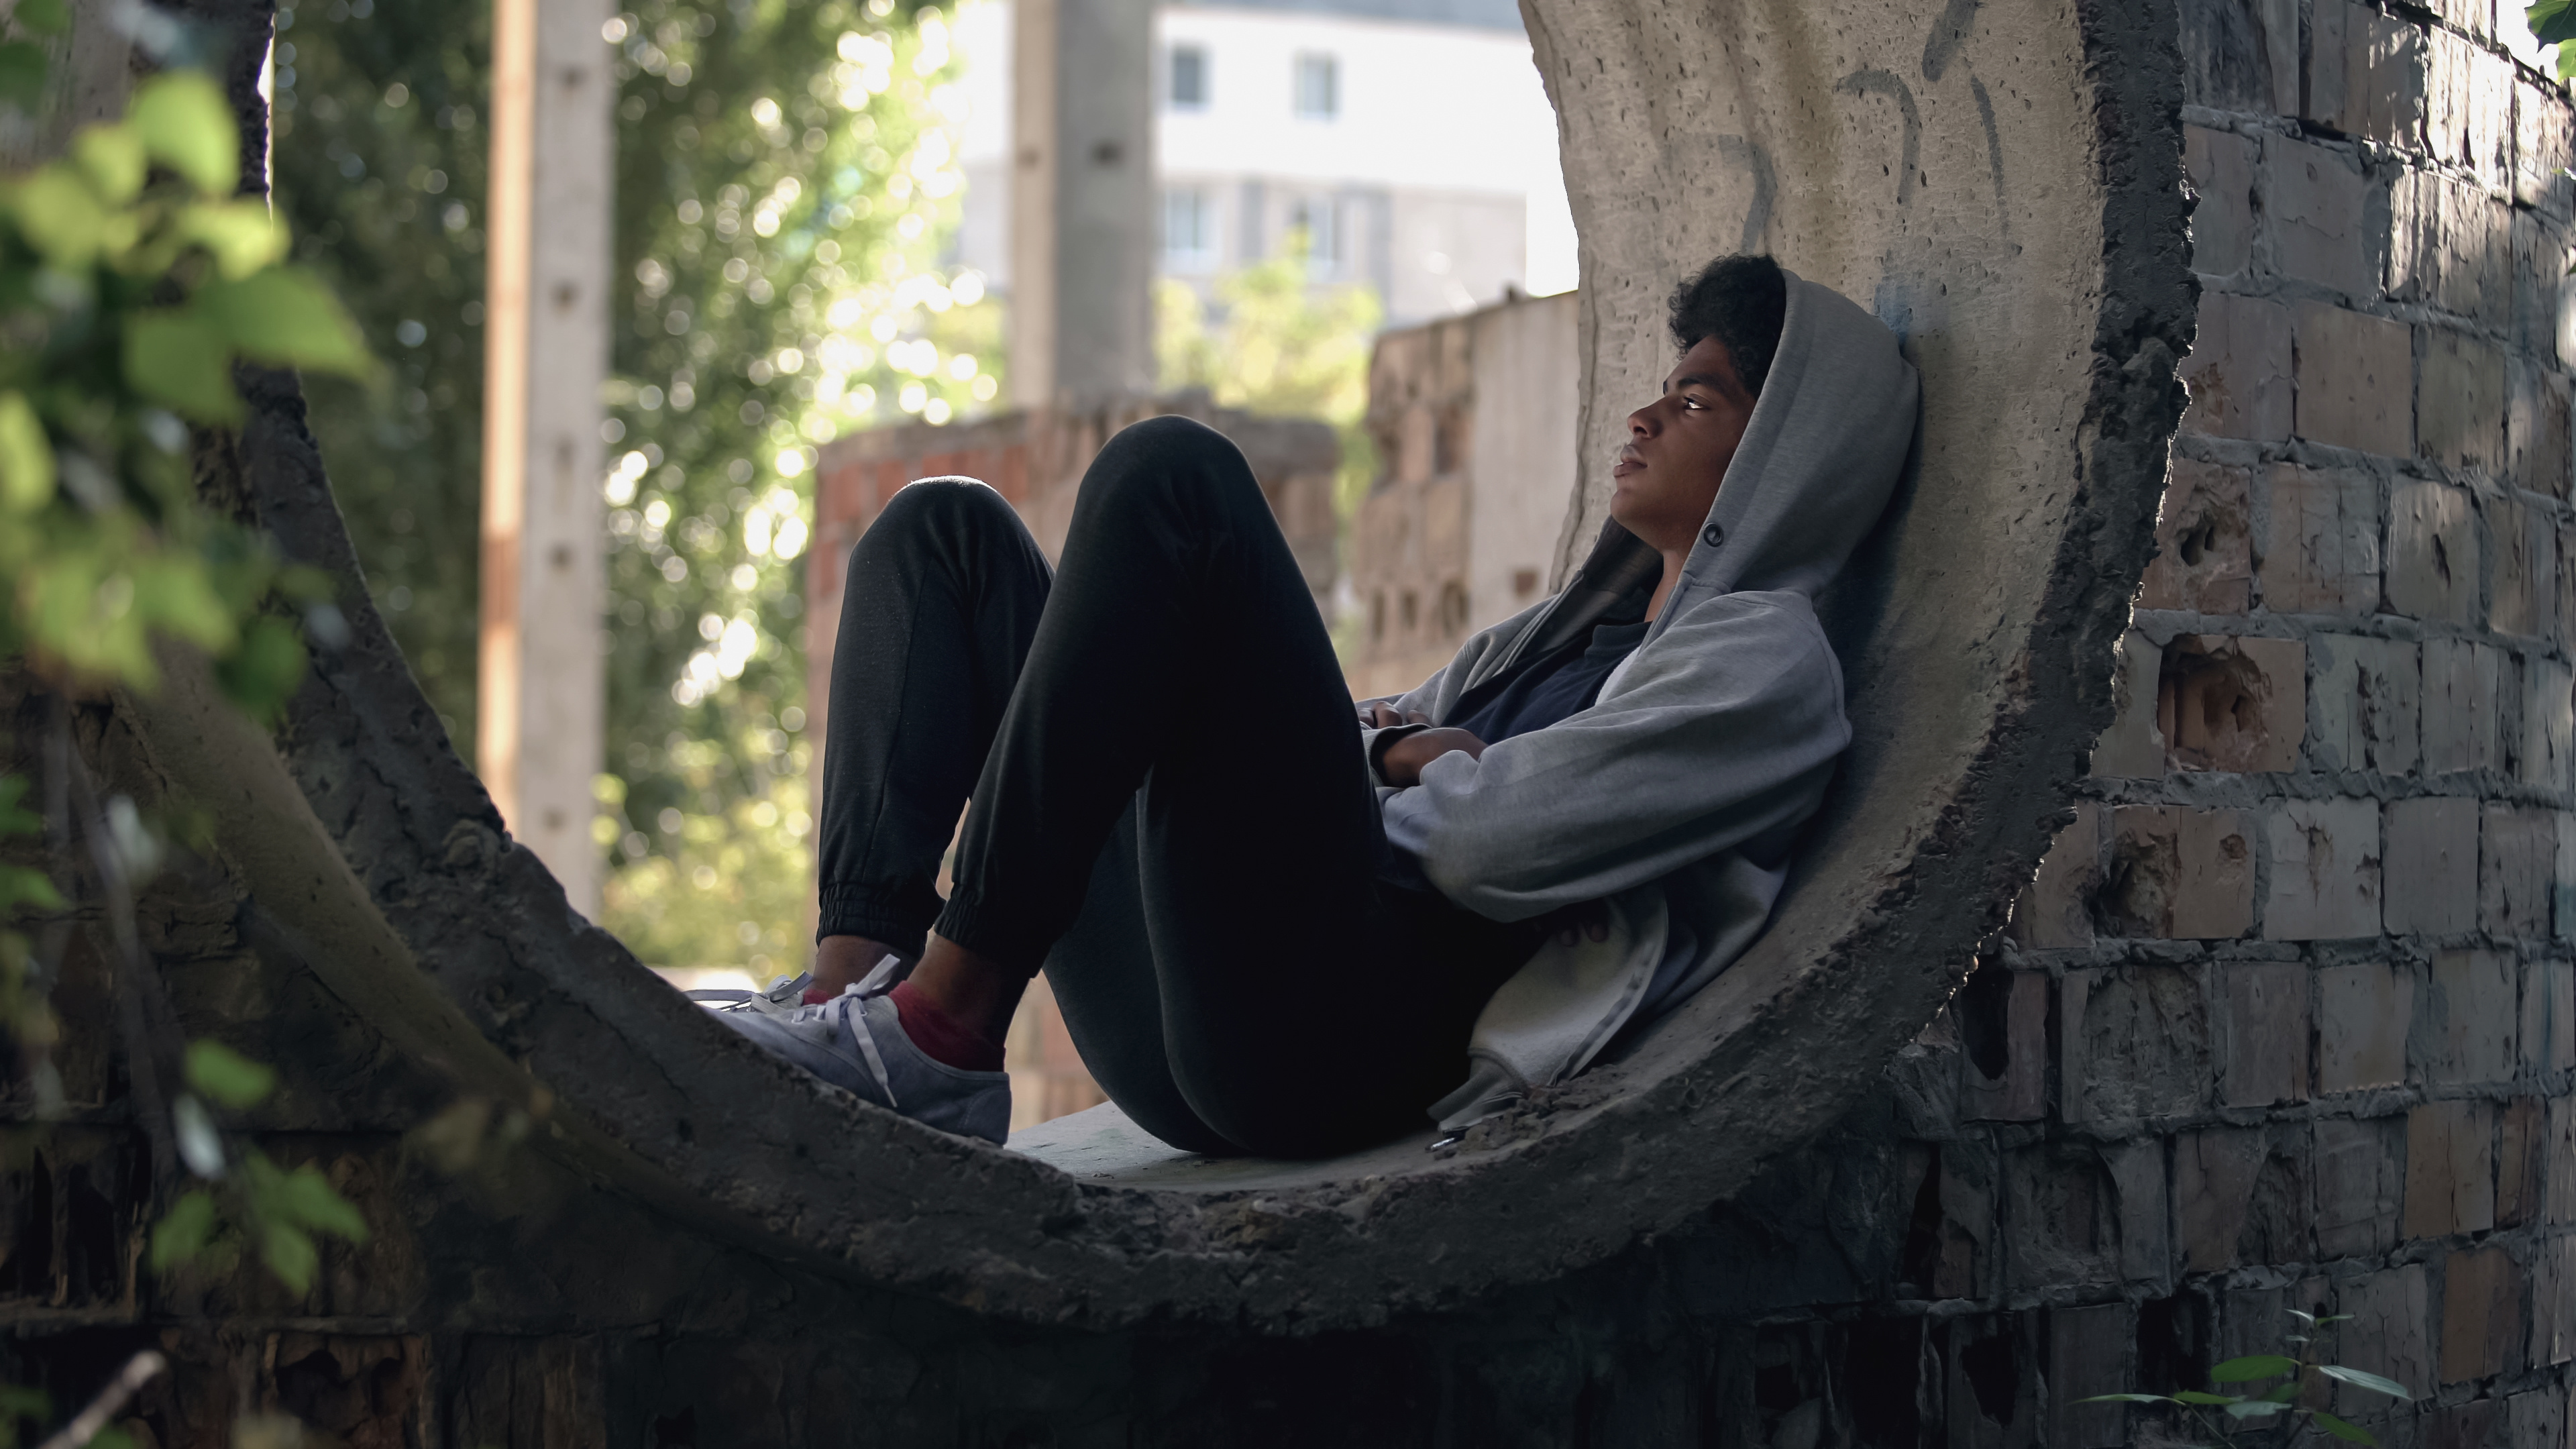 Trauriger einsamer Student im Kapuzenpulli, der allein in einem verlassenen Gebäude sitzt.